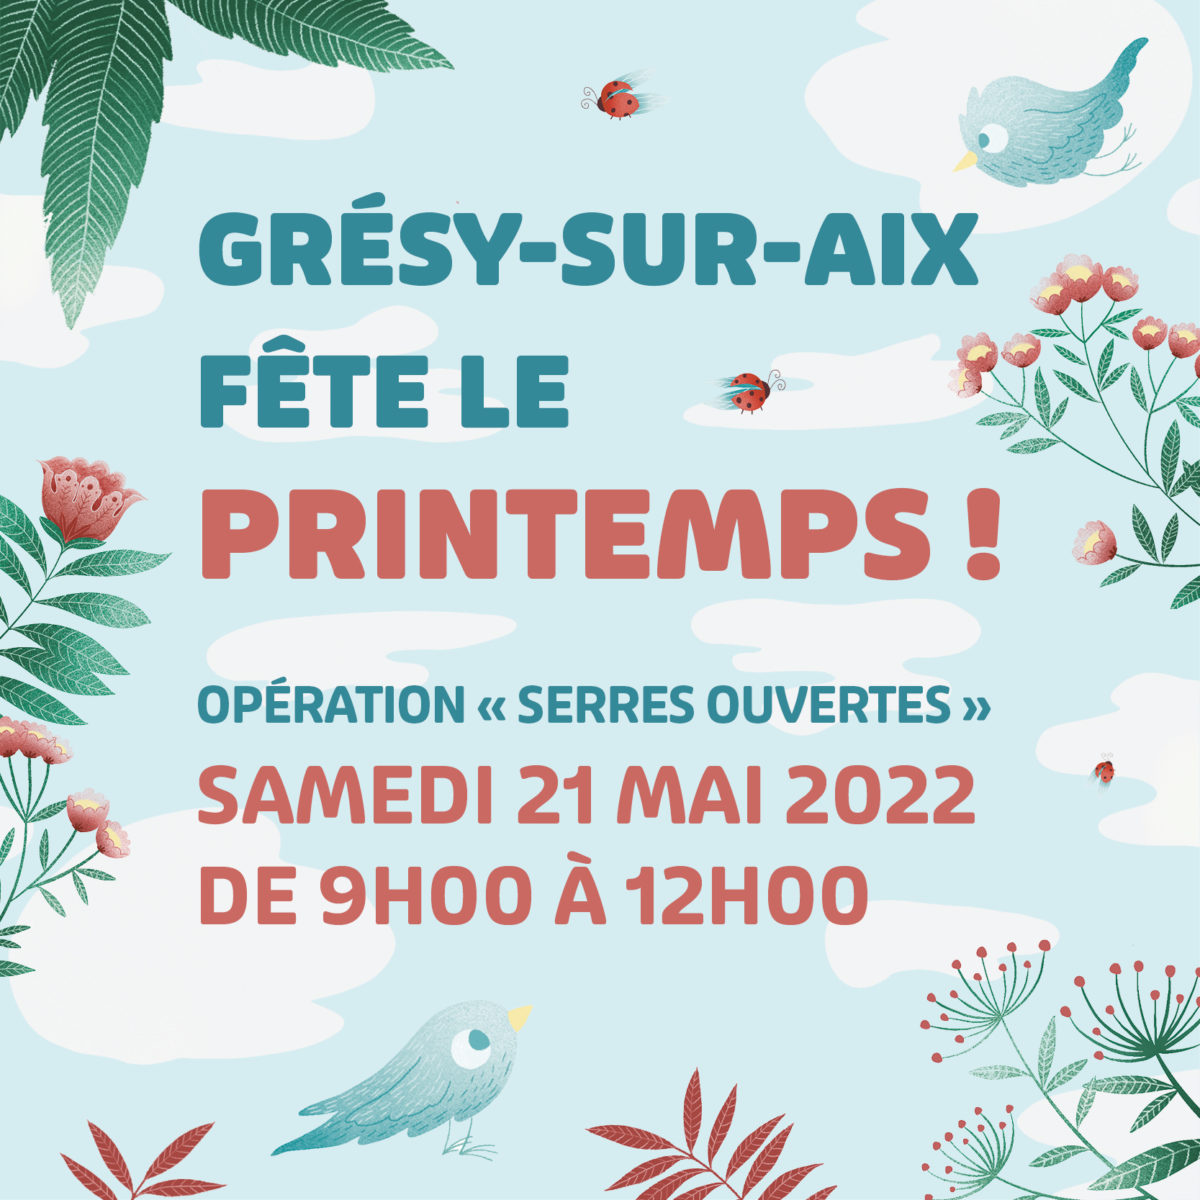 Grésy-sur-Aix fête le Printemps !